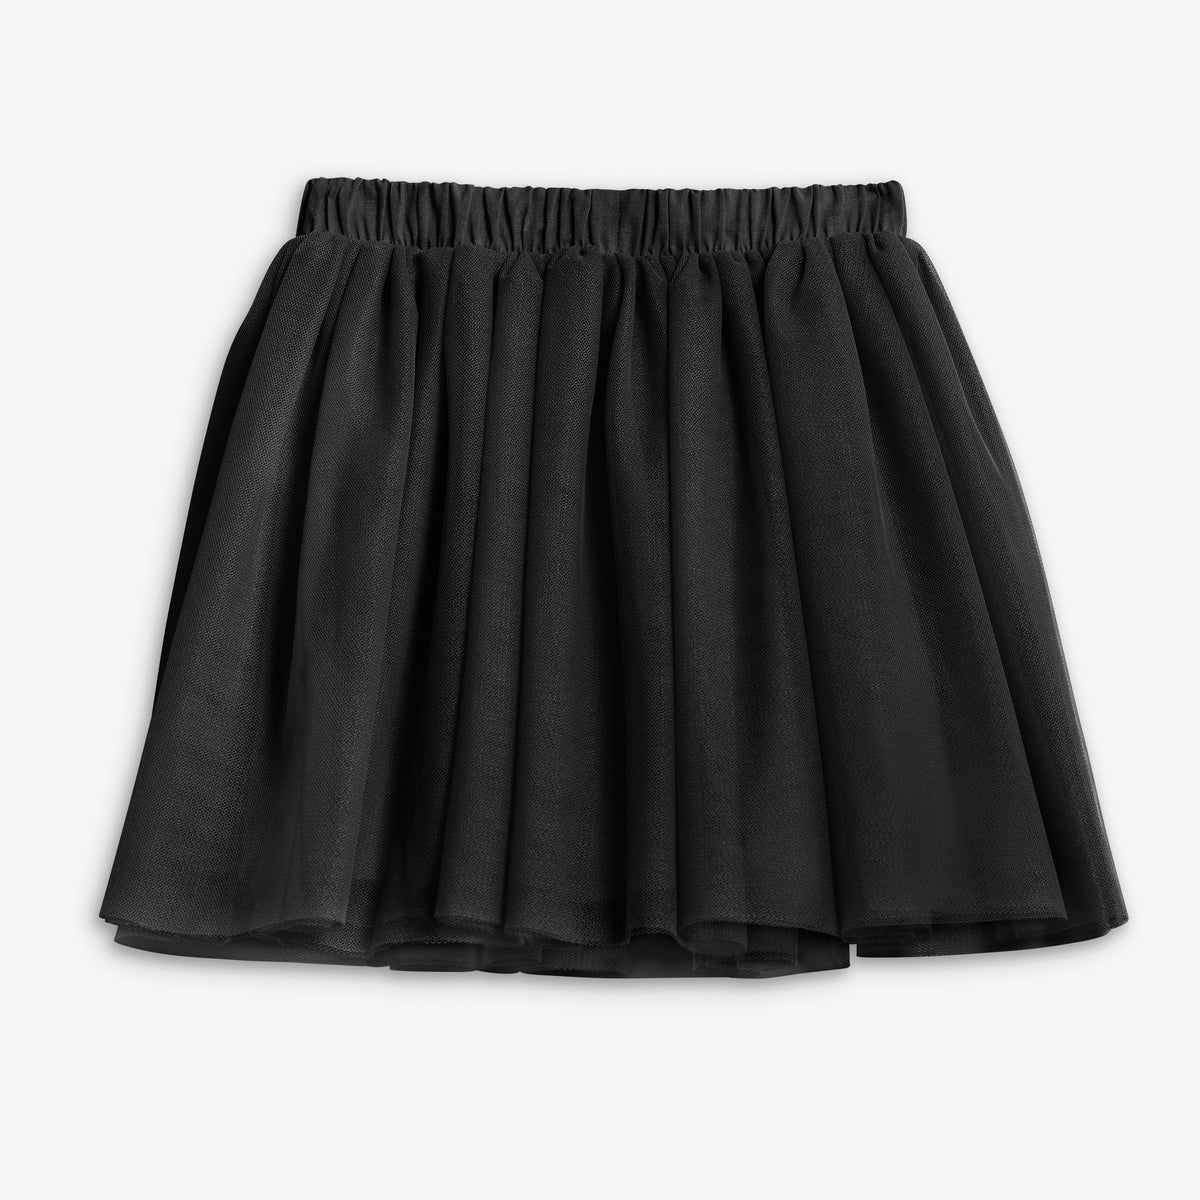 Tutu skirt | Primary.com